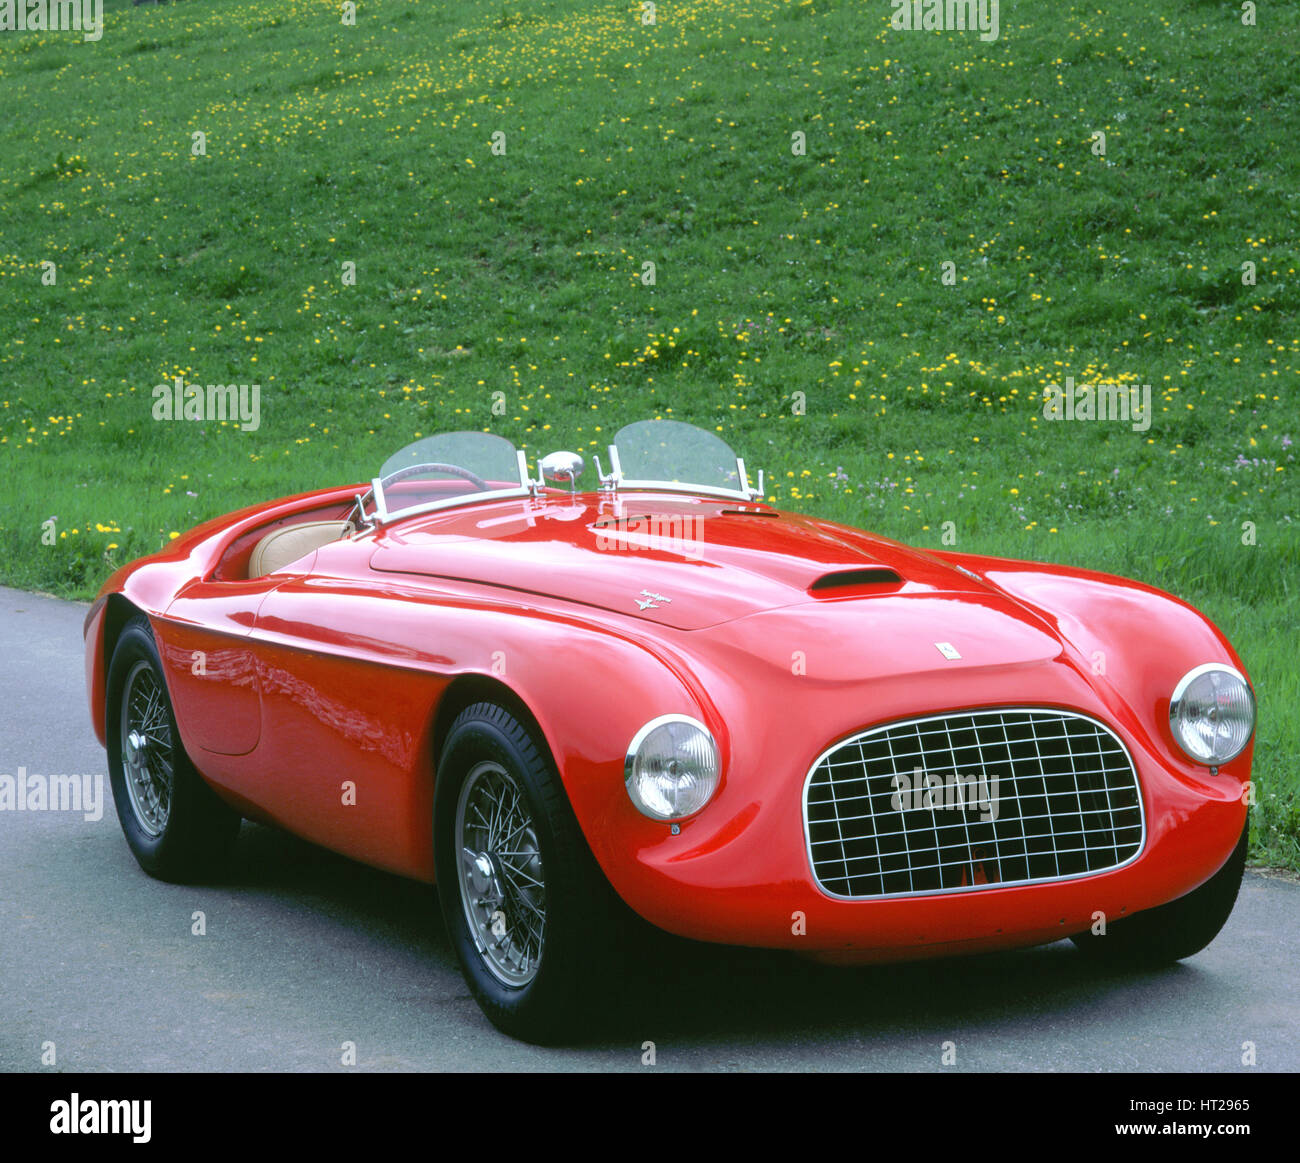 1949 Ferrari 166 Barchetta. Artist: Unknown. Stock Photo